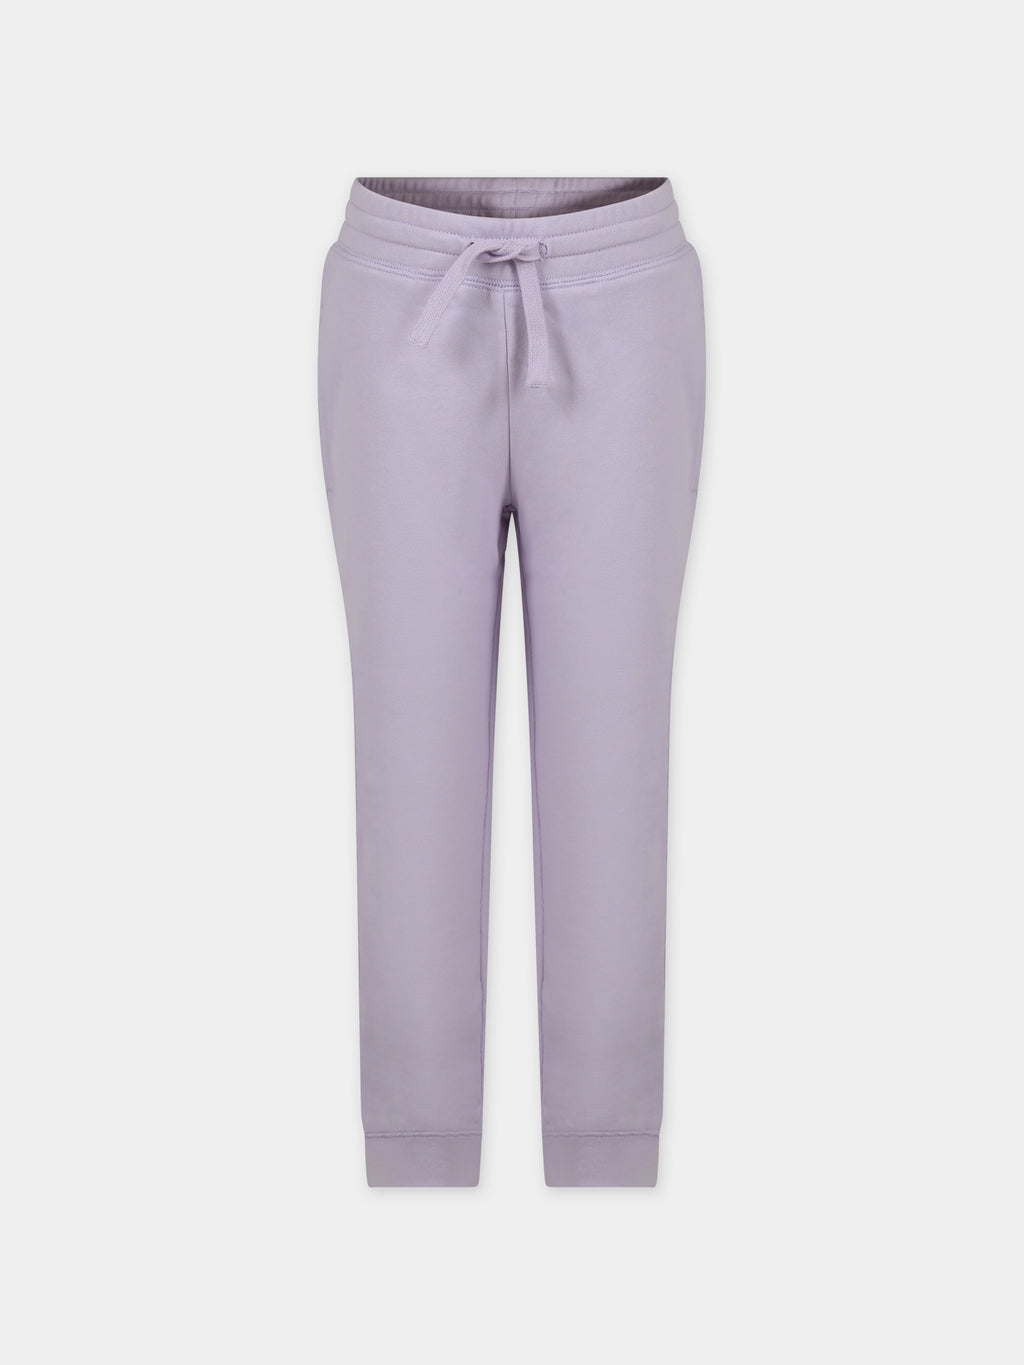 Pantalon violet pour fille avec logo